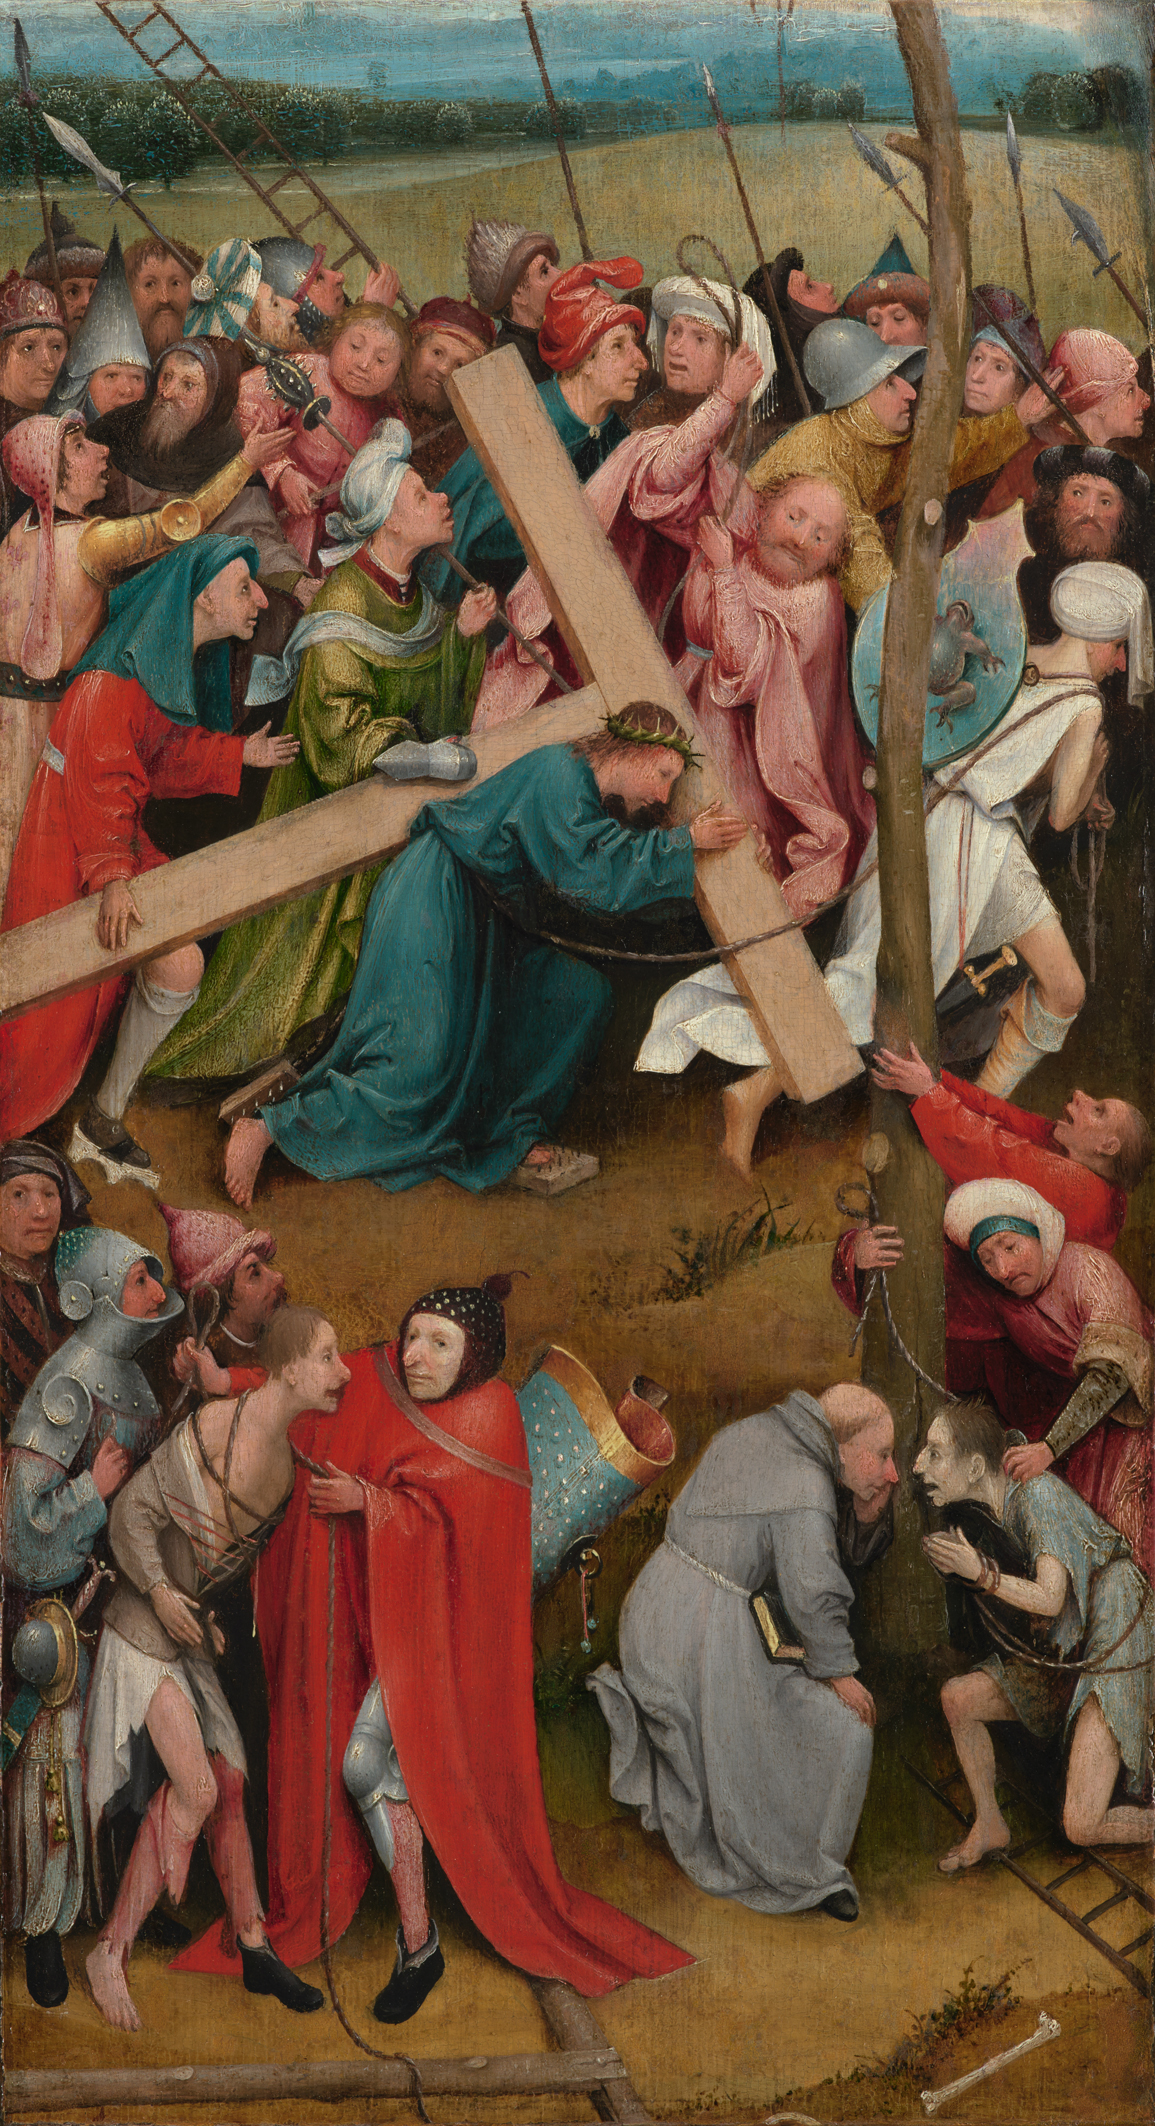 Cristo con la cruz a cuestas by Hieronymus Bosch - 1480/90 Kunsthistorisches Museum